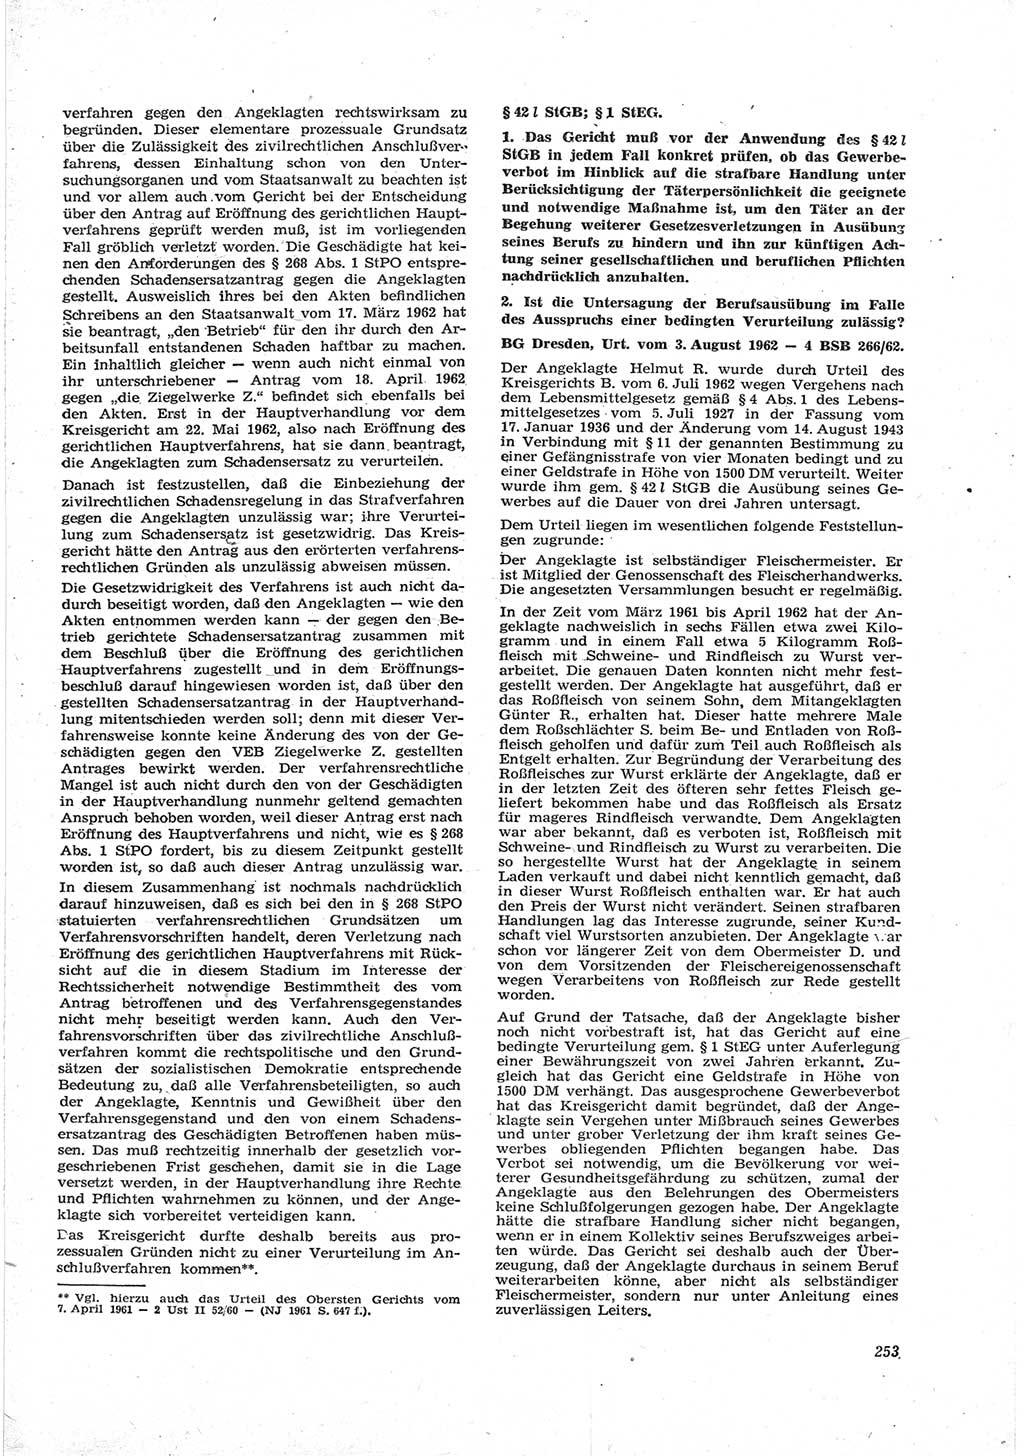 Neue Justiz (NJ), Zeitschrift für Recht und Rechtswissenschaft [Deutsche Demokratische Republik (DDR)], 17. Jahrgang 1963, Seite 253 (NJ DDR 1963, S. 253)